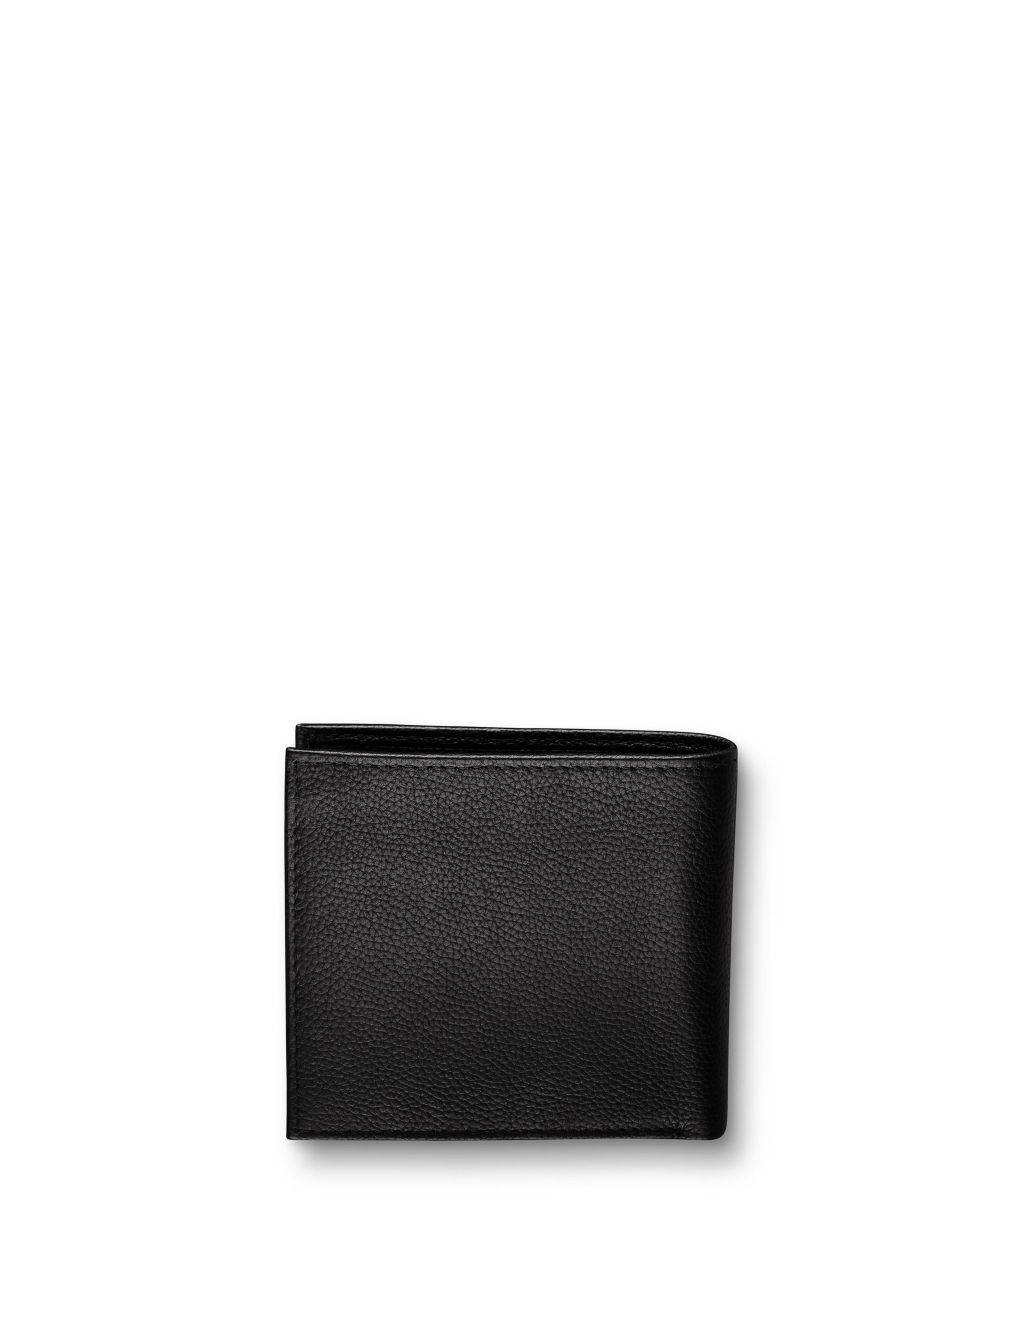 Leather Pebble Grain Bi-fold Wallet